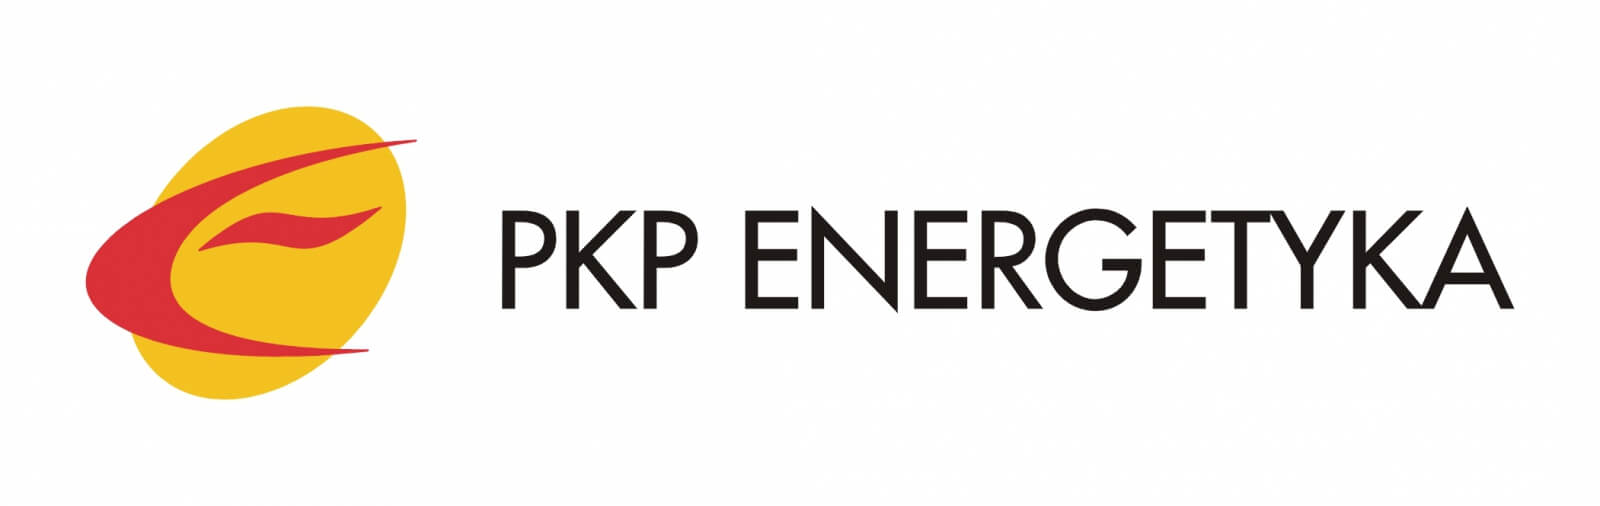 Cena przyłącza elektrycznego do domu - PKP Energetyka